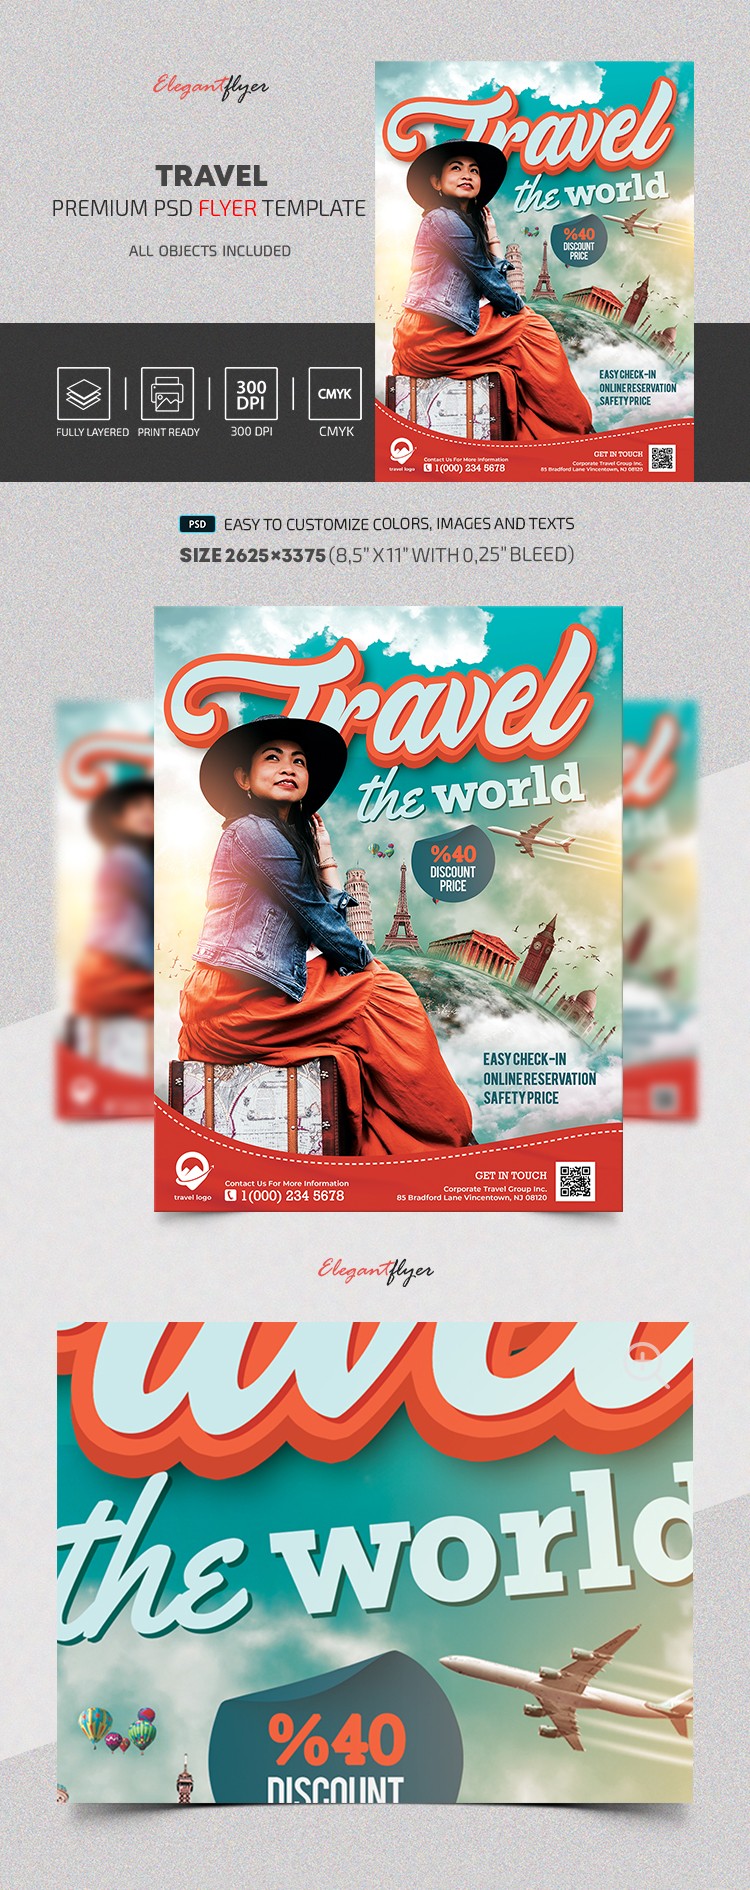 Travel Flyer by ElegantFlyer